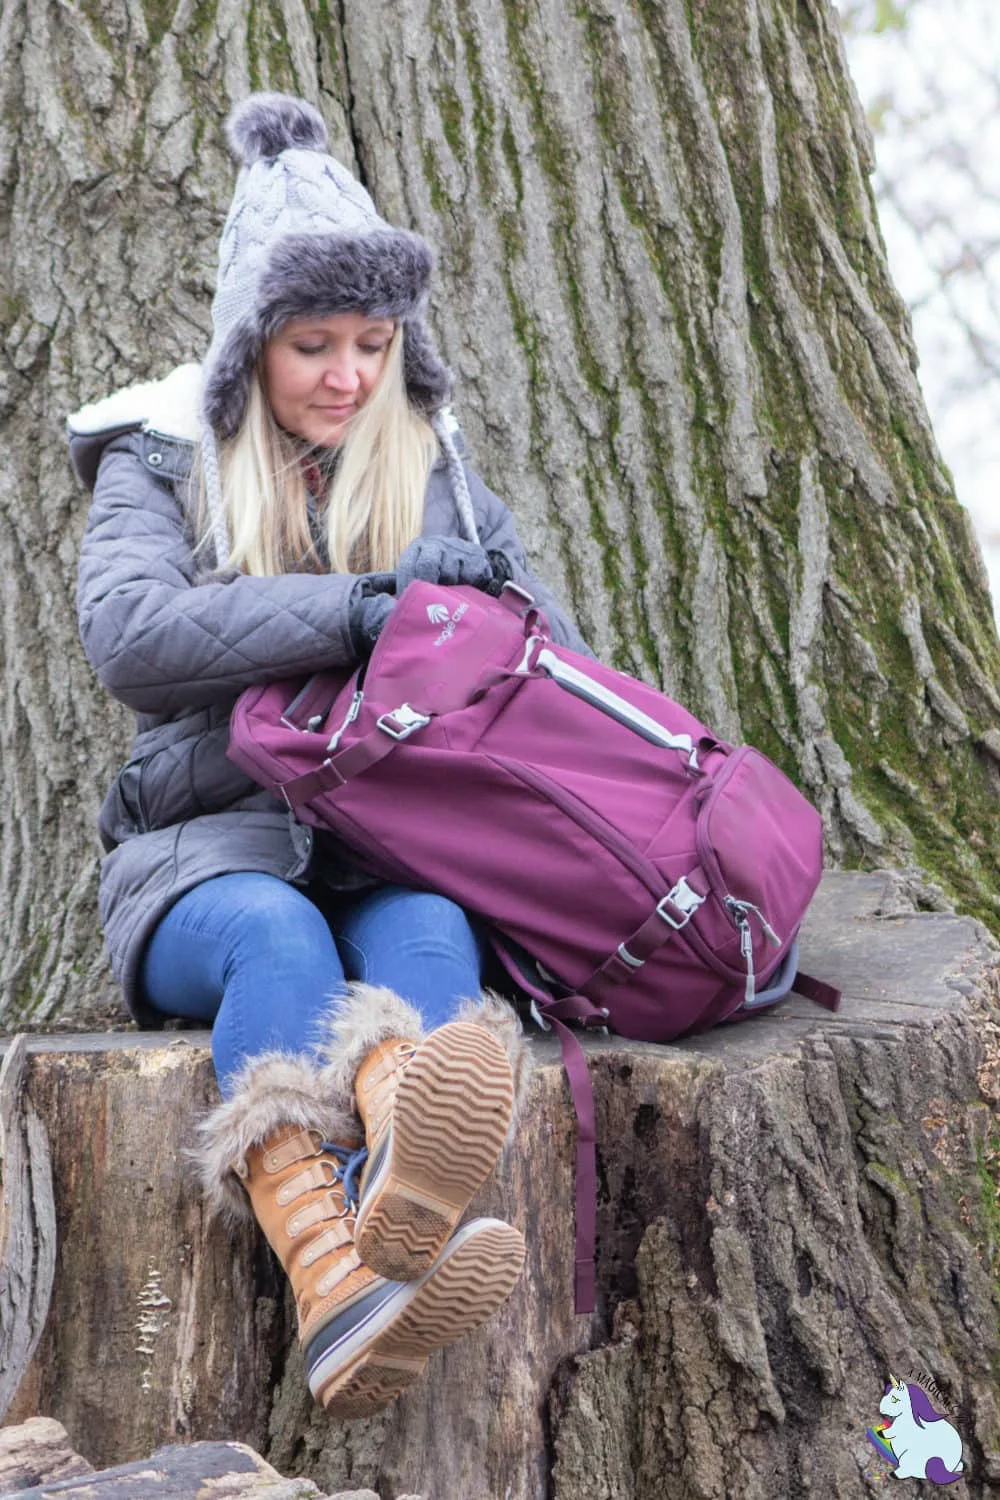 Shelley VanWitzenburg sitting on large tree stump with plum backpack